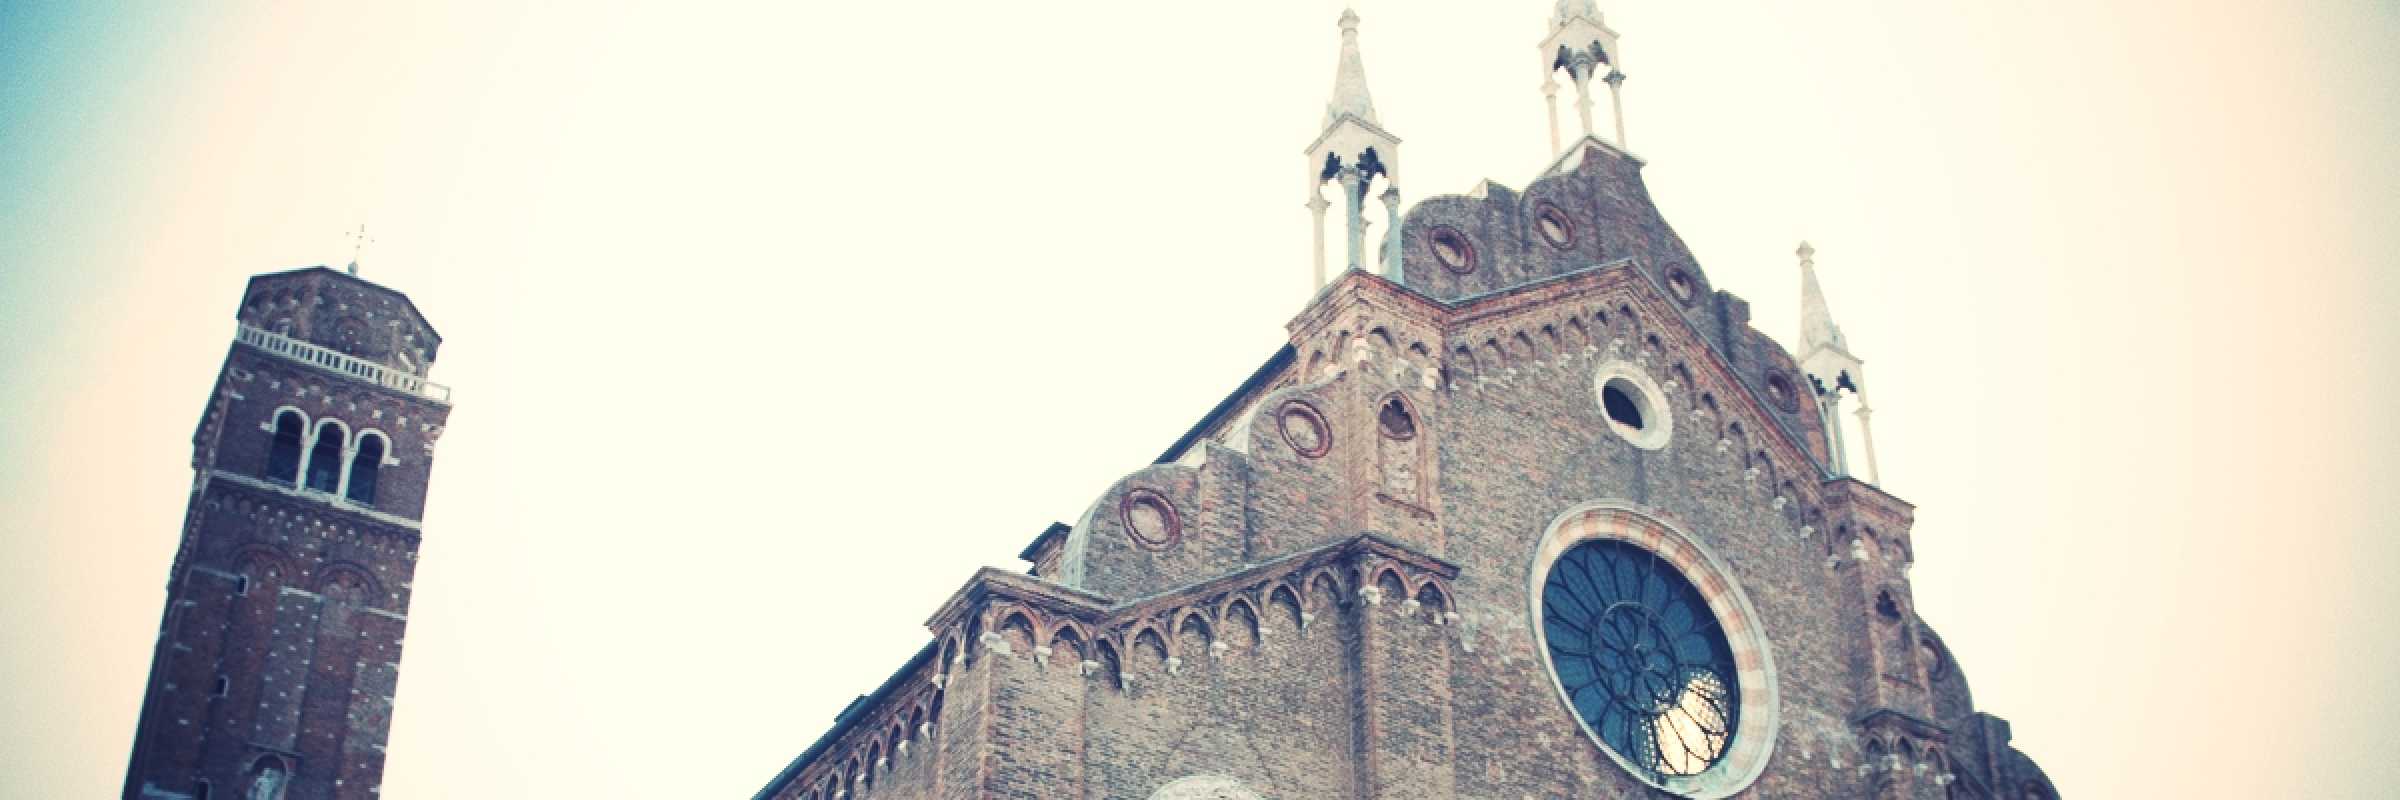 Particolare della Basilica di Santa Maria Gloriosa dei Frari — (Archivio Venipedia/Bazzmann)